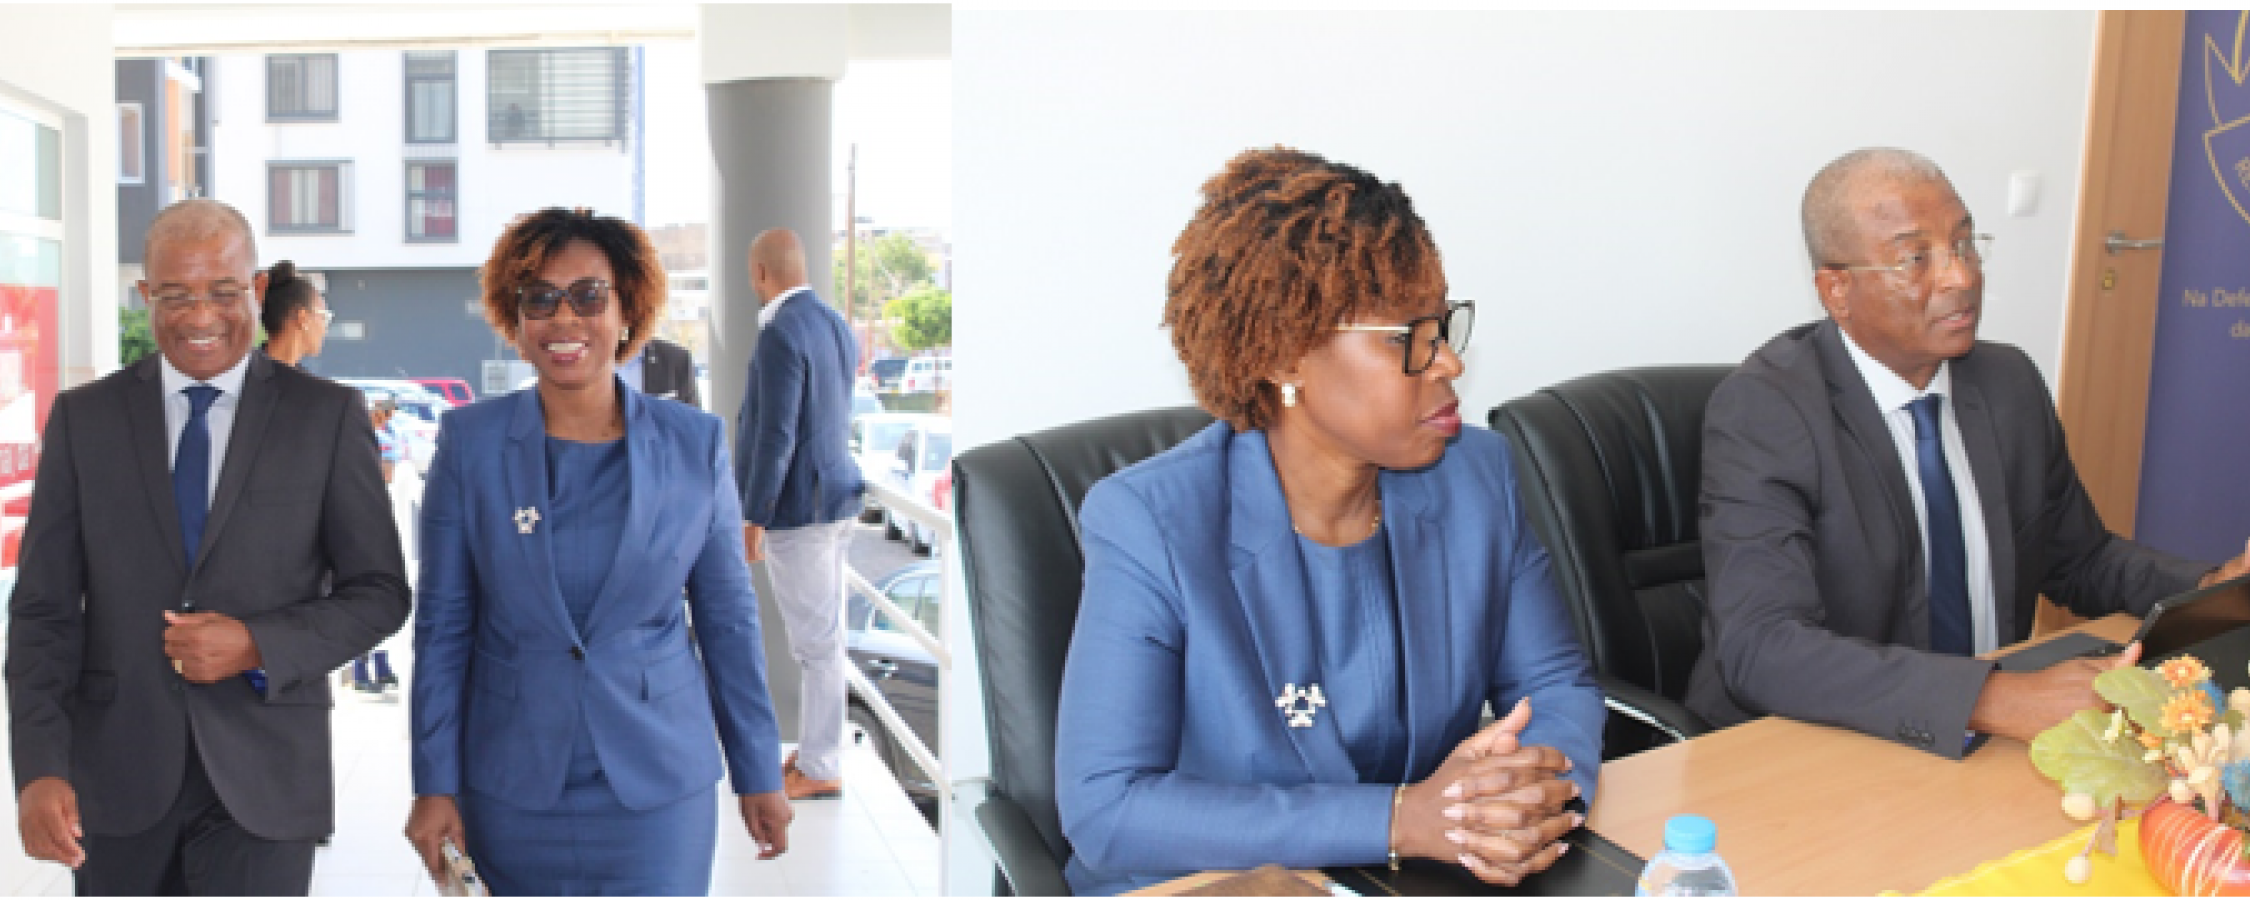 Procurador-Geral da República recebe Delegação da Procuradoria-Geral da República de Moçambique 